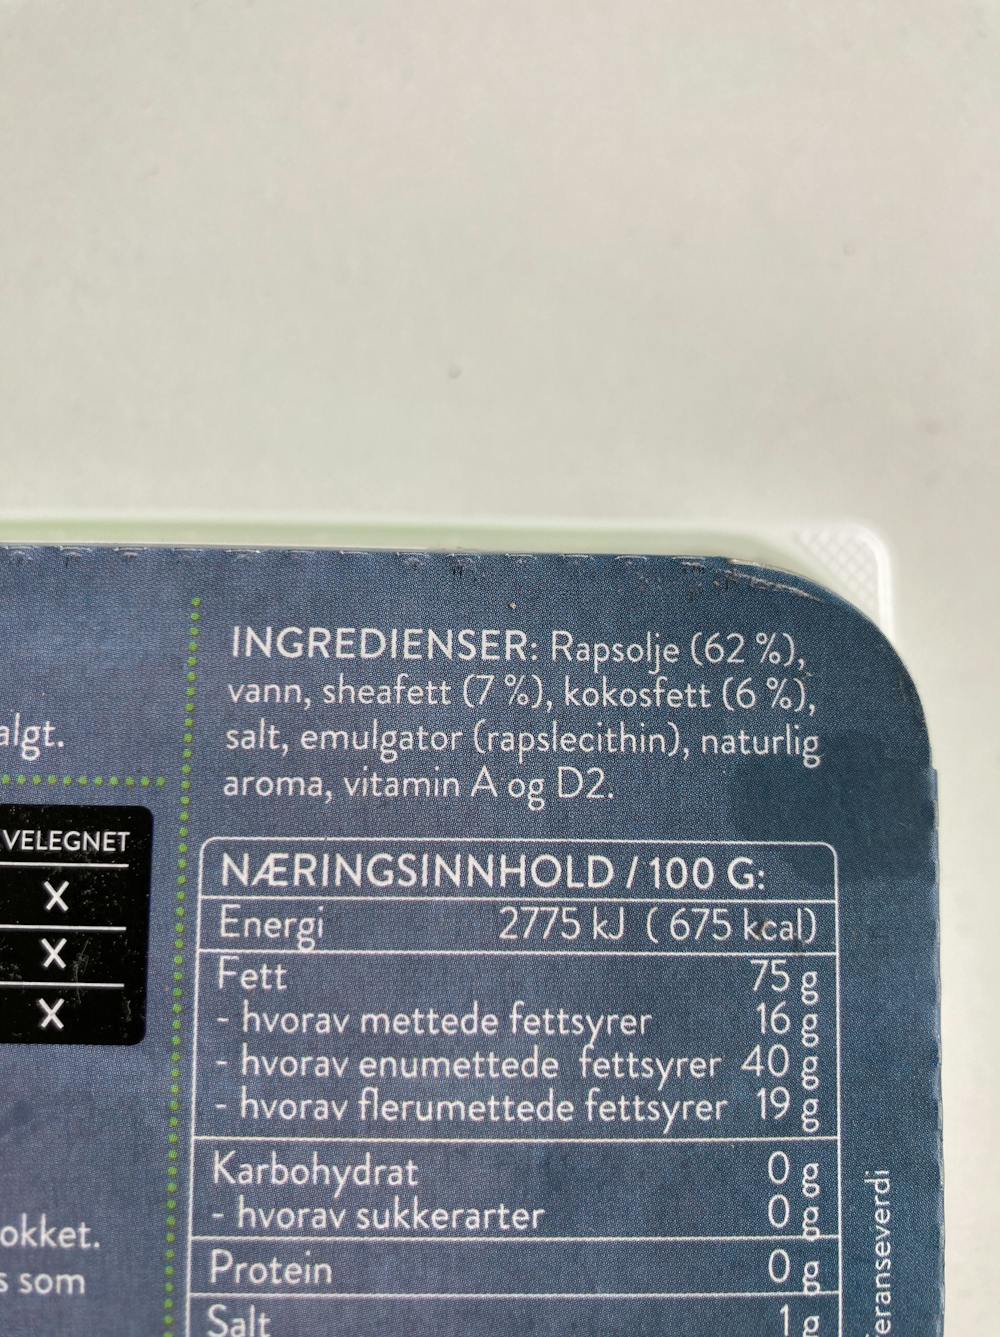 Ingrediensliste - Smøremyk, Made by Berit Nordstrand